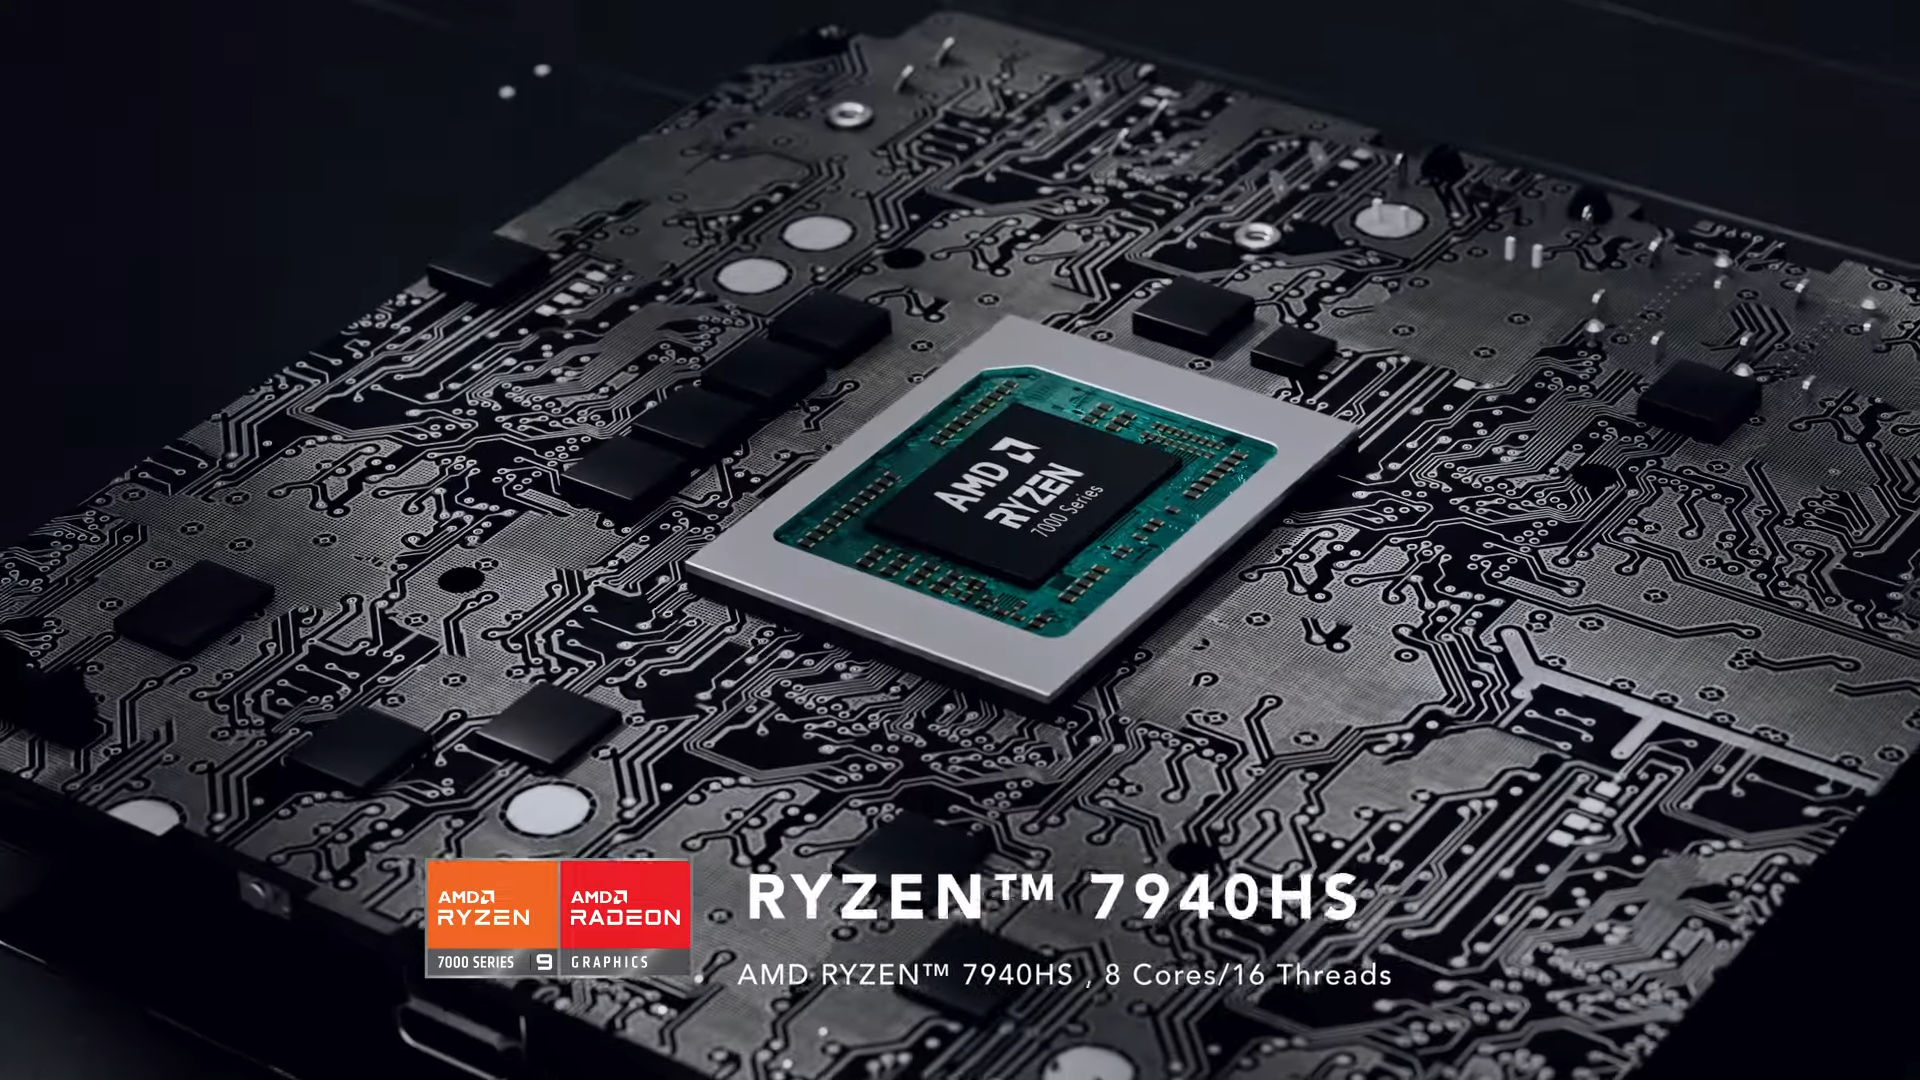 Minisforum debuts Venus UM790 Pro Mini-PC featuring AMD Ryzen 9